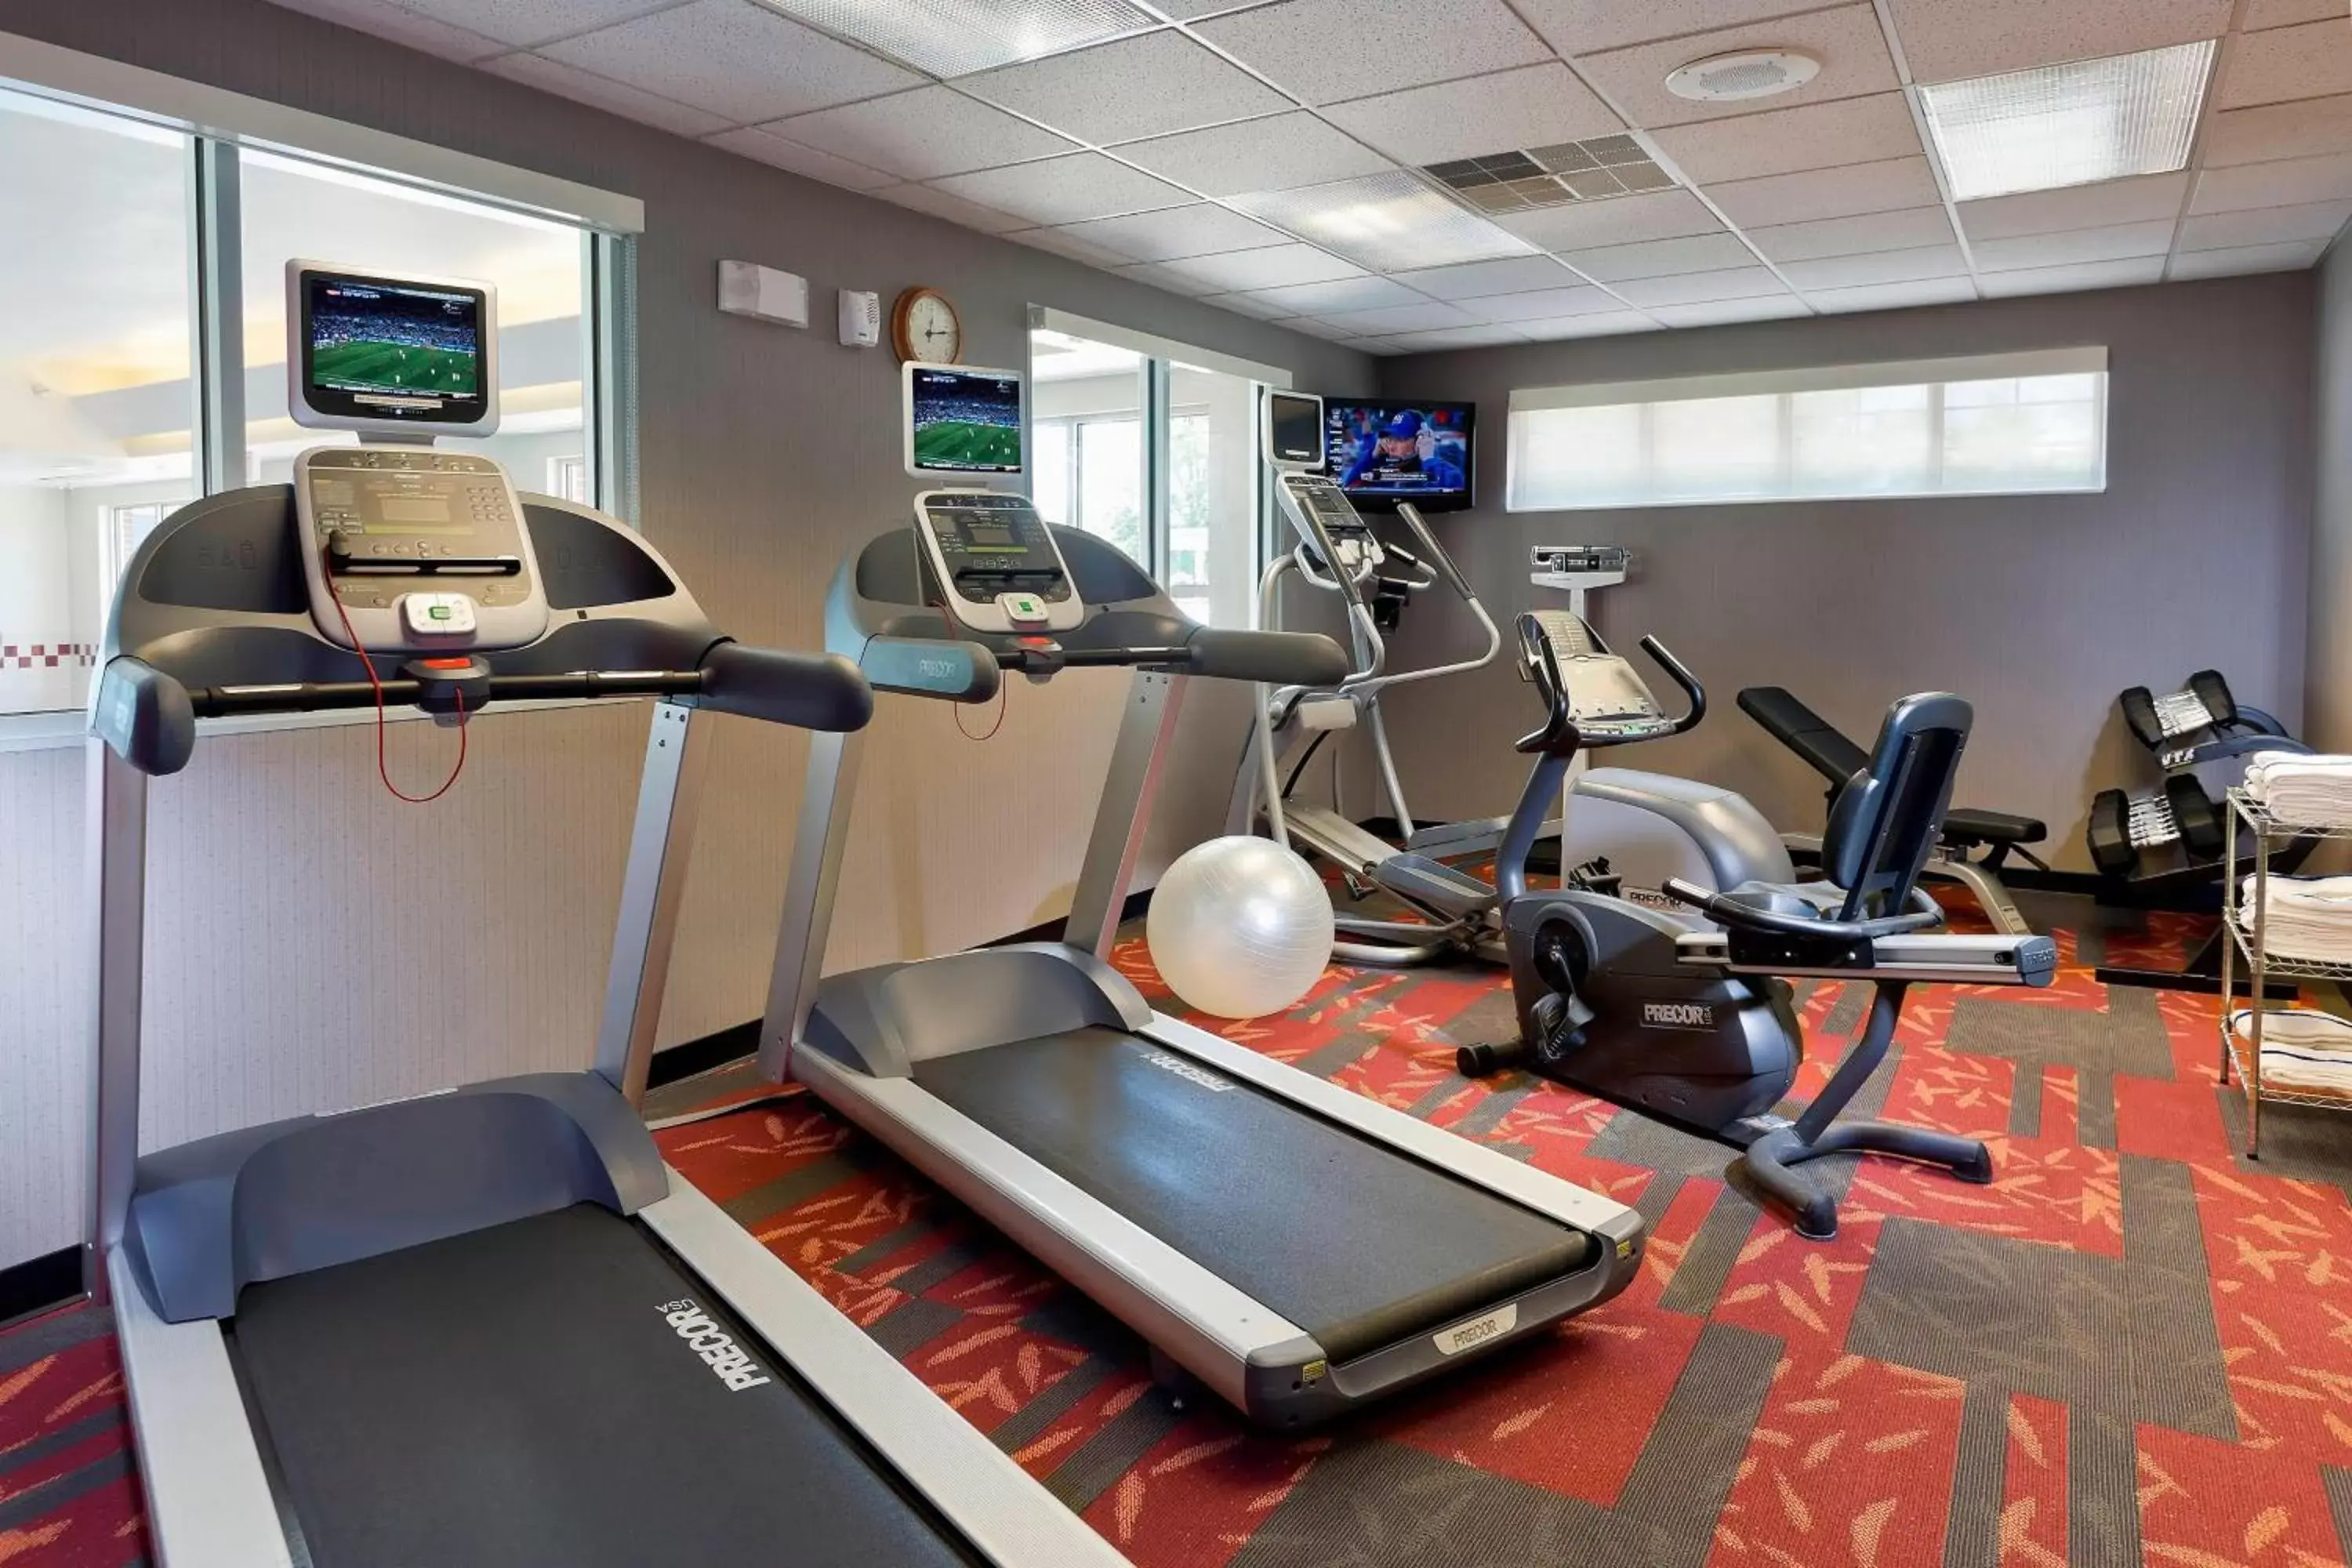 Fitness centre/facilities, Fitness Center/Facilities in Residence Inn by Marriott Cedar Rapids